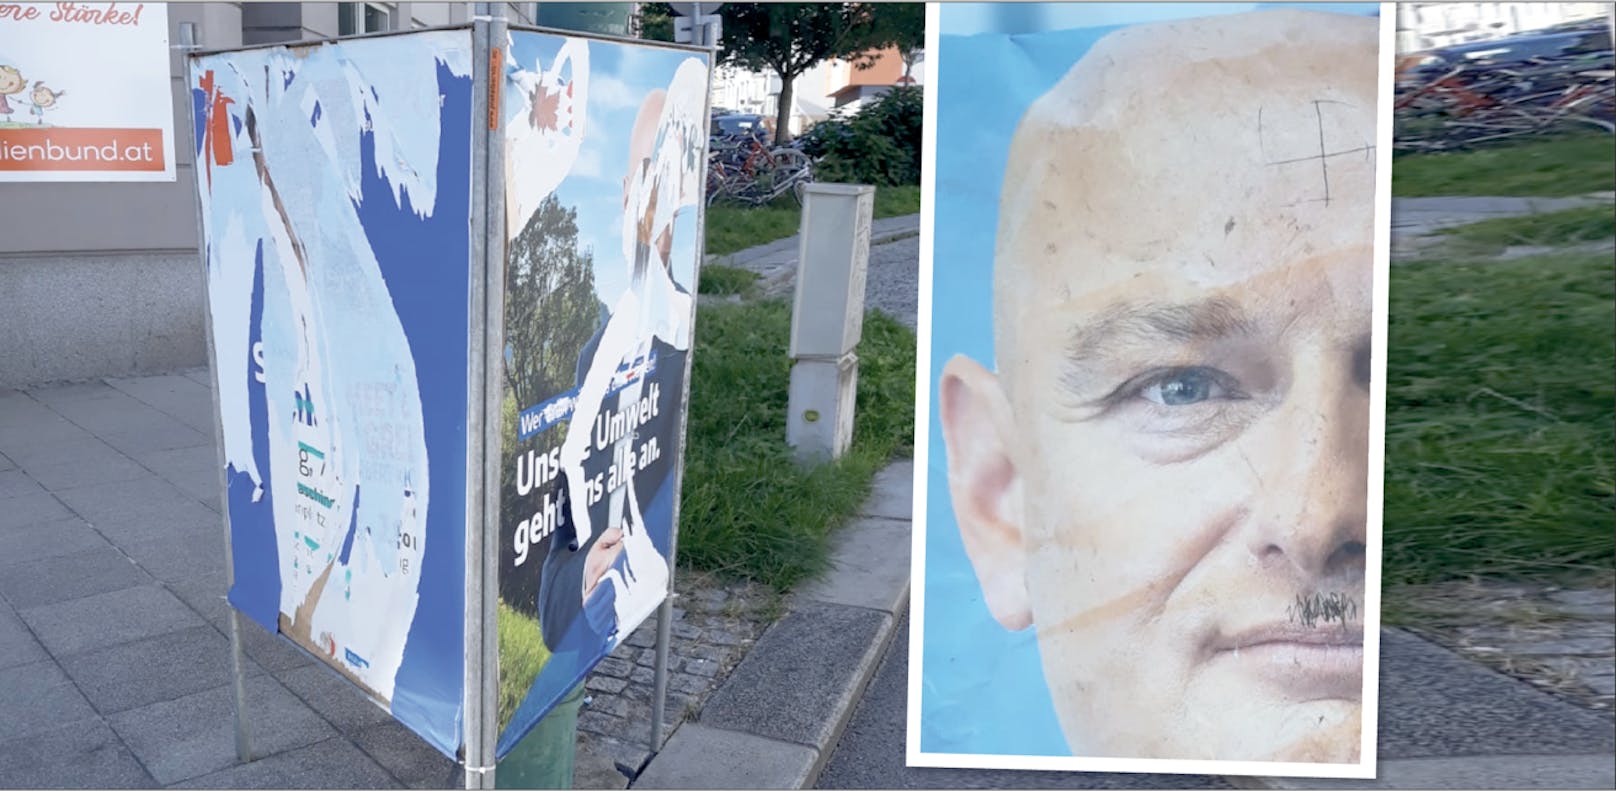 Die Plakate der FPÖ werden immer wieder zerstört oder beschmiert.